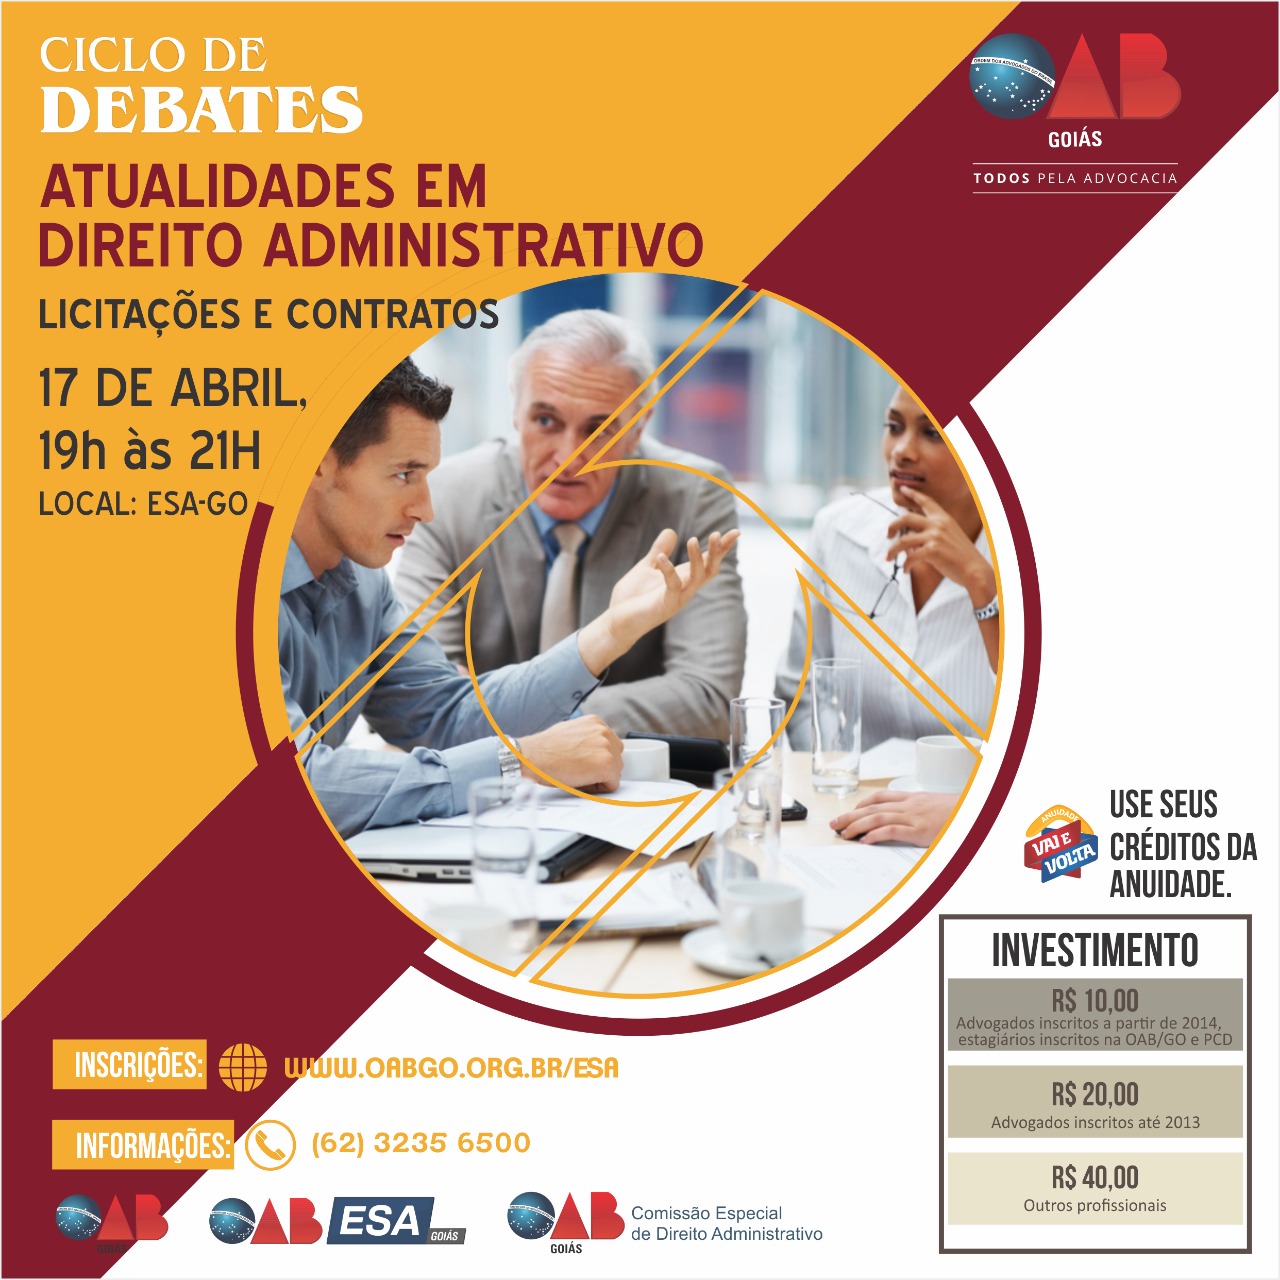 17.04 - Ciclo de Debates: Atualidades em Direito Administrativo - Licitações e Contratos